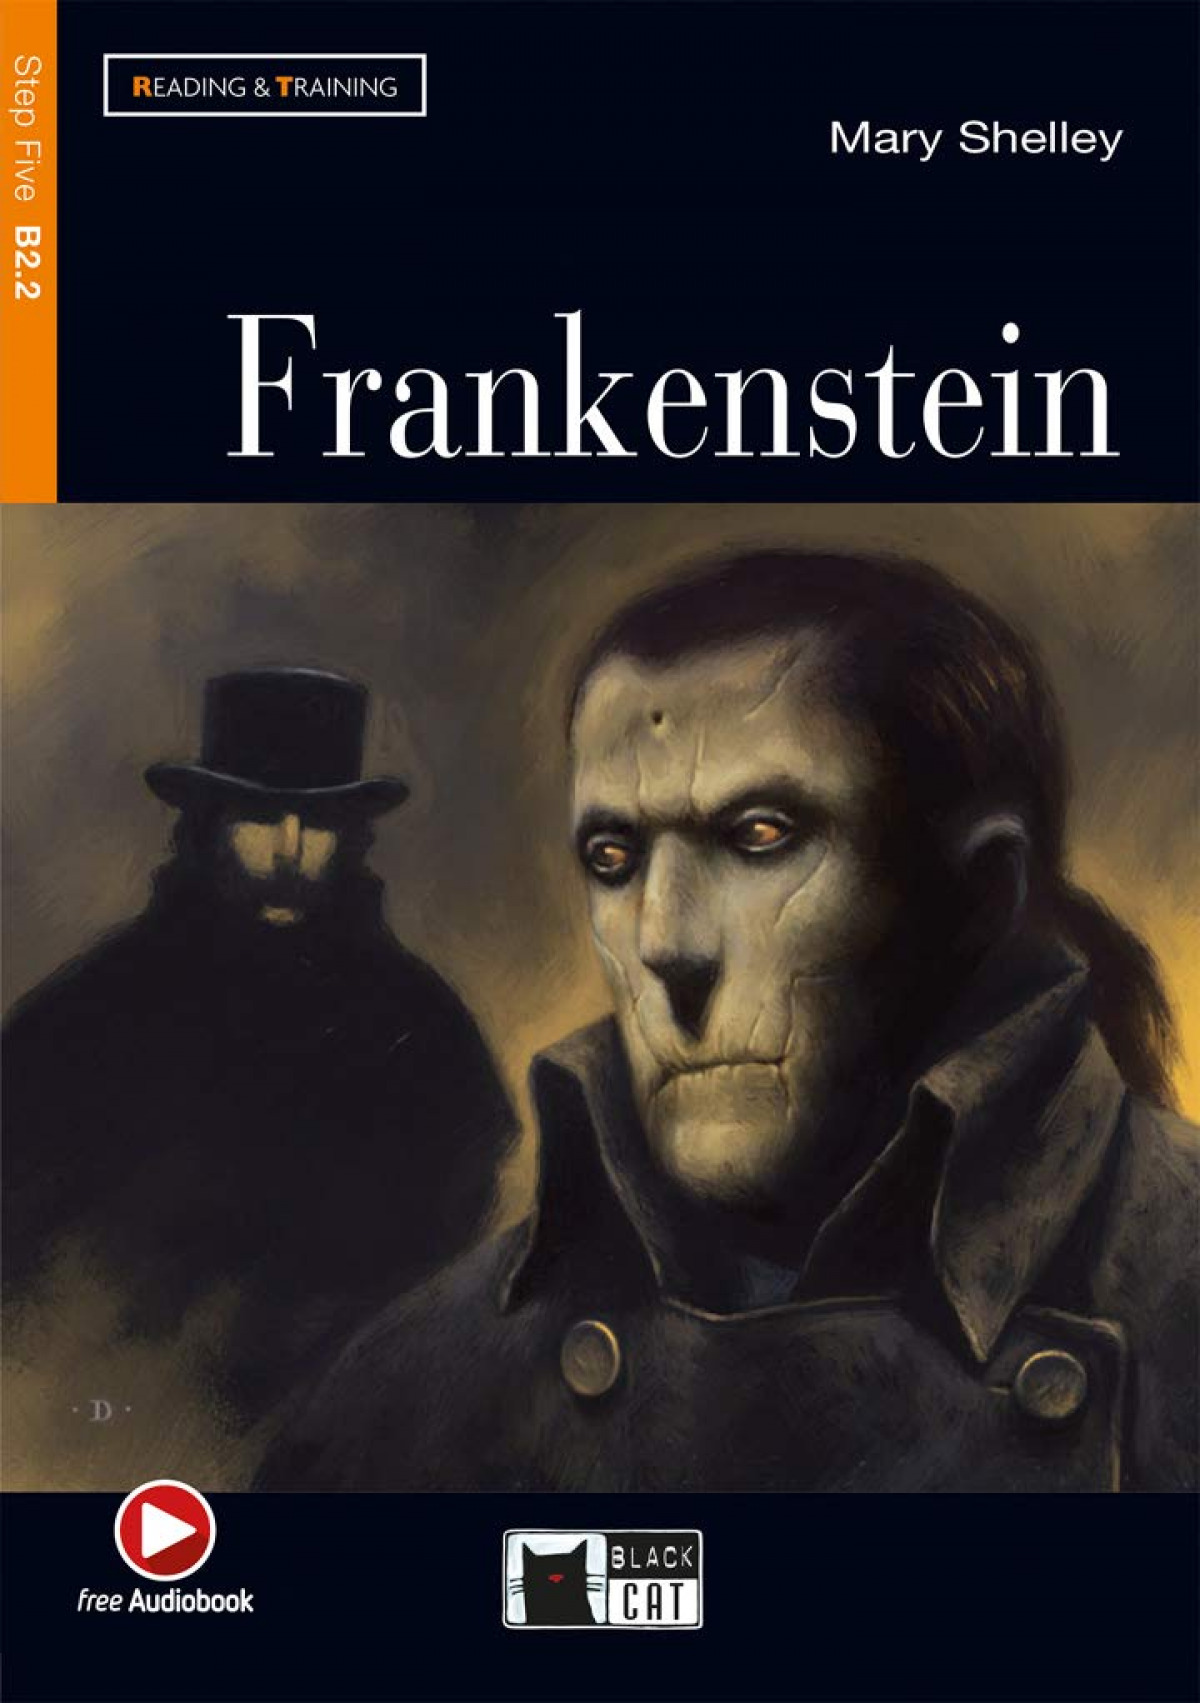 Frankenstein - Shelley, Mary Wollstonecraft